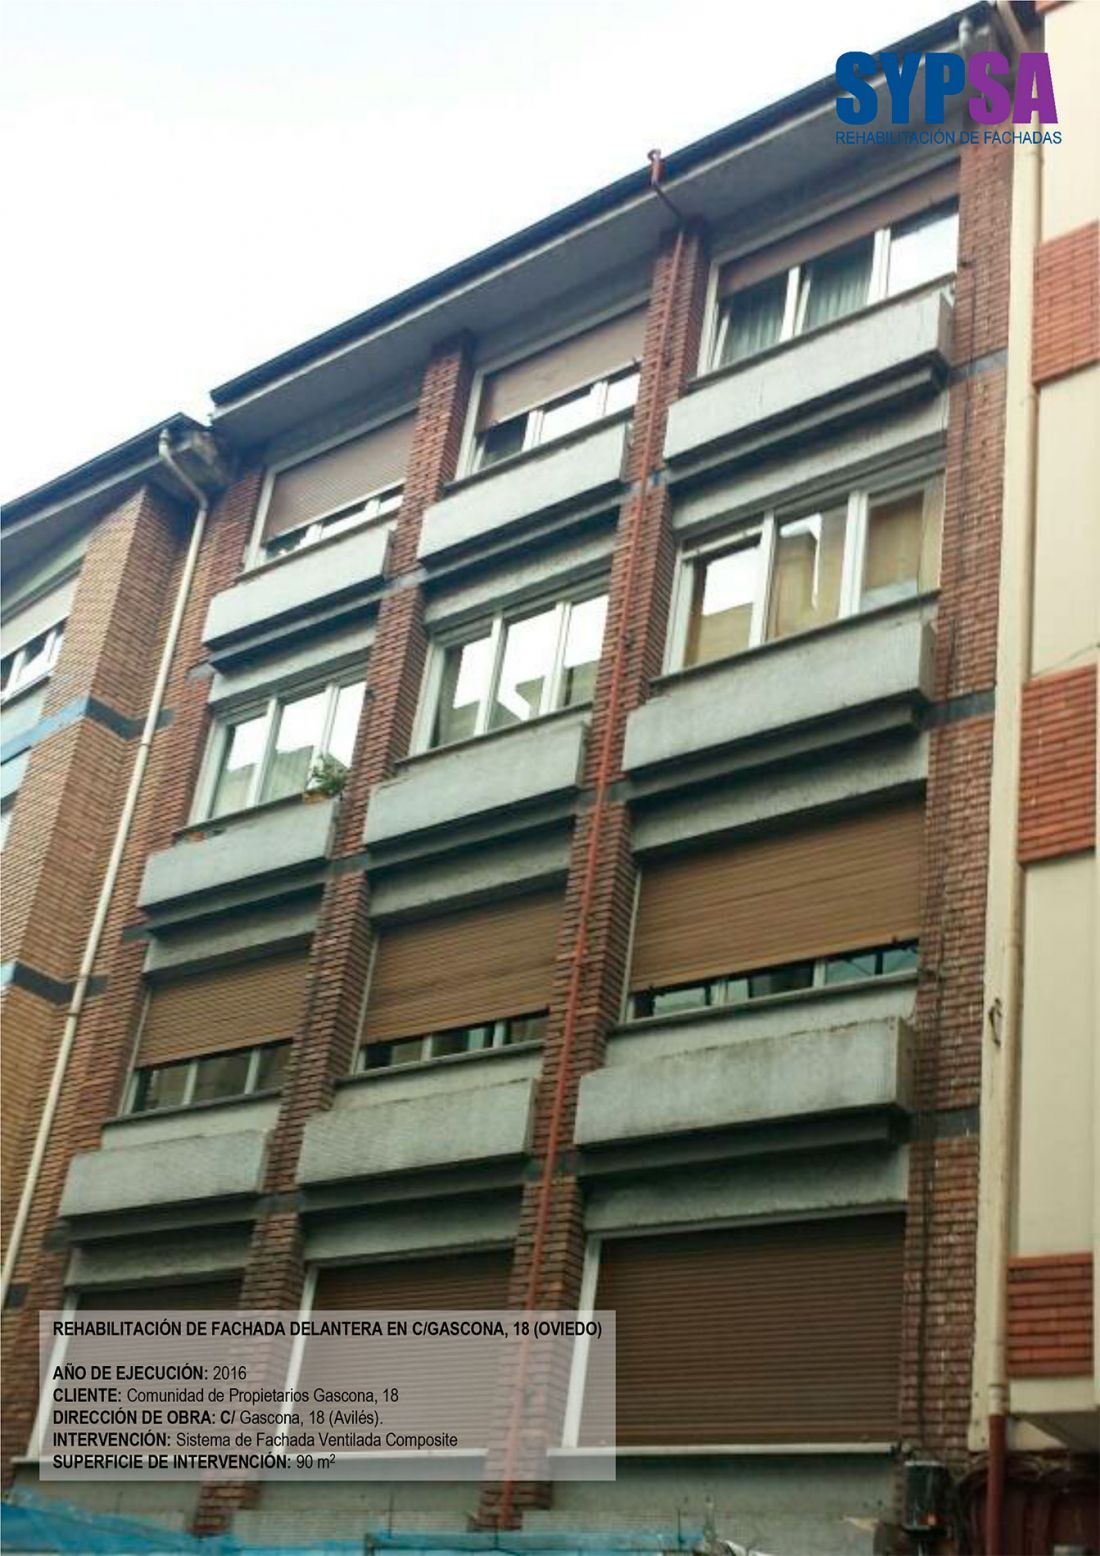 Rehabilitación de fachada delantera en C/Gascona, 18 (Oviedo) - Antes